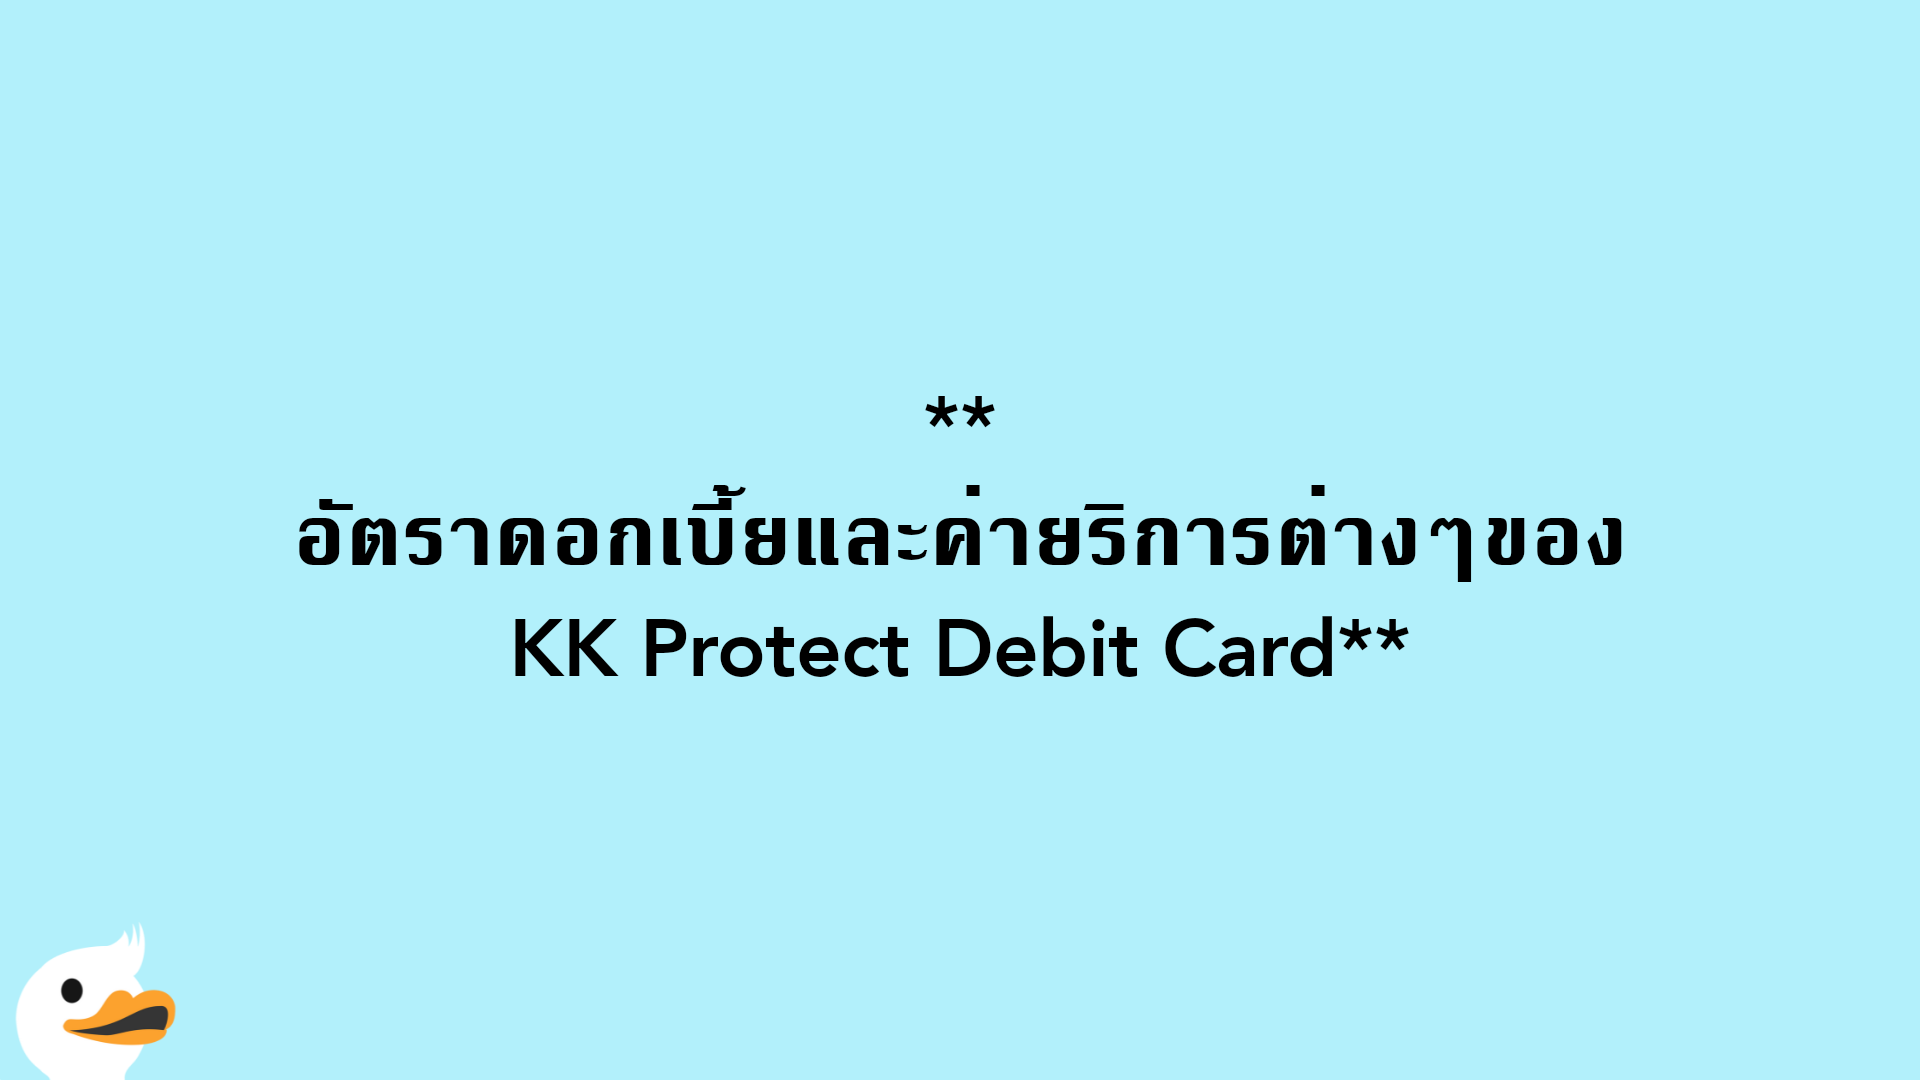 อัตราดอกเบี้ยและค่ายริการต่างๆของKK Protect Debit Card